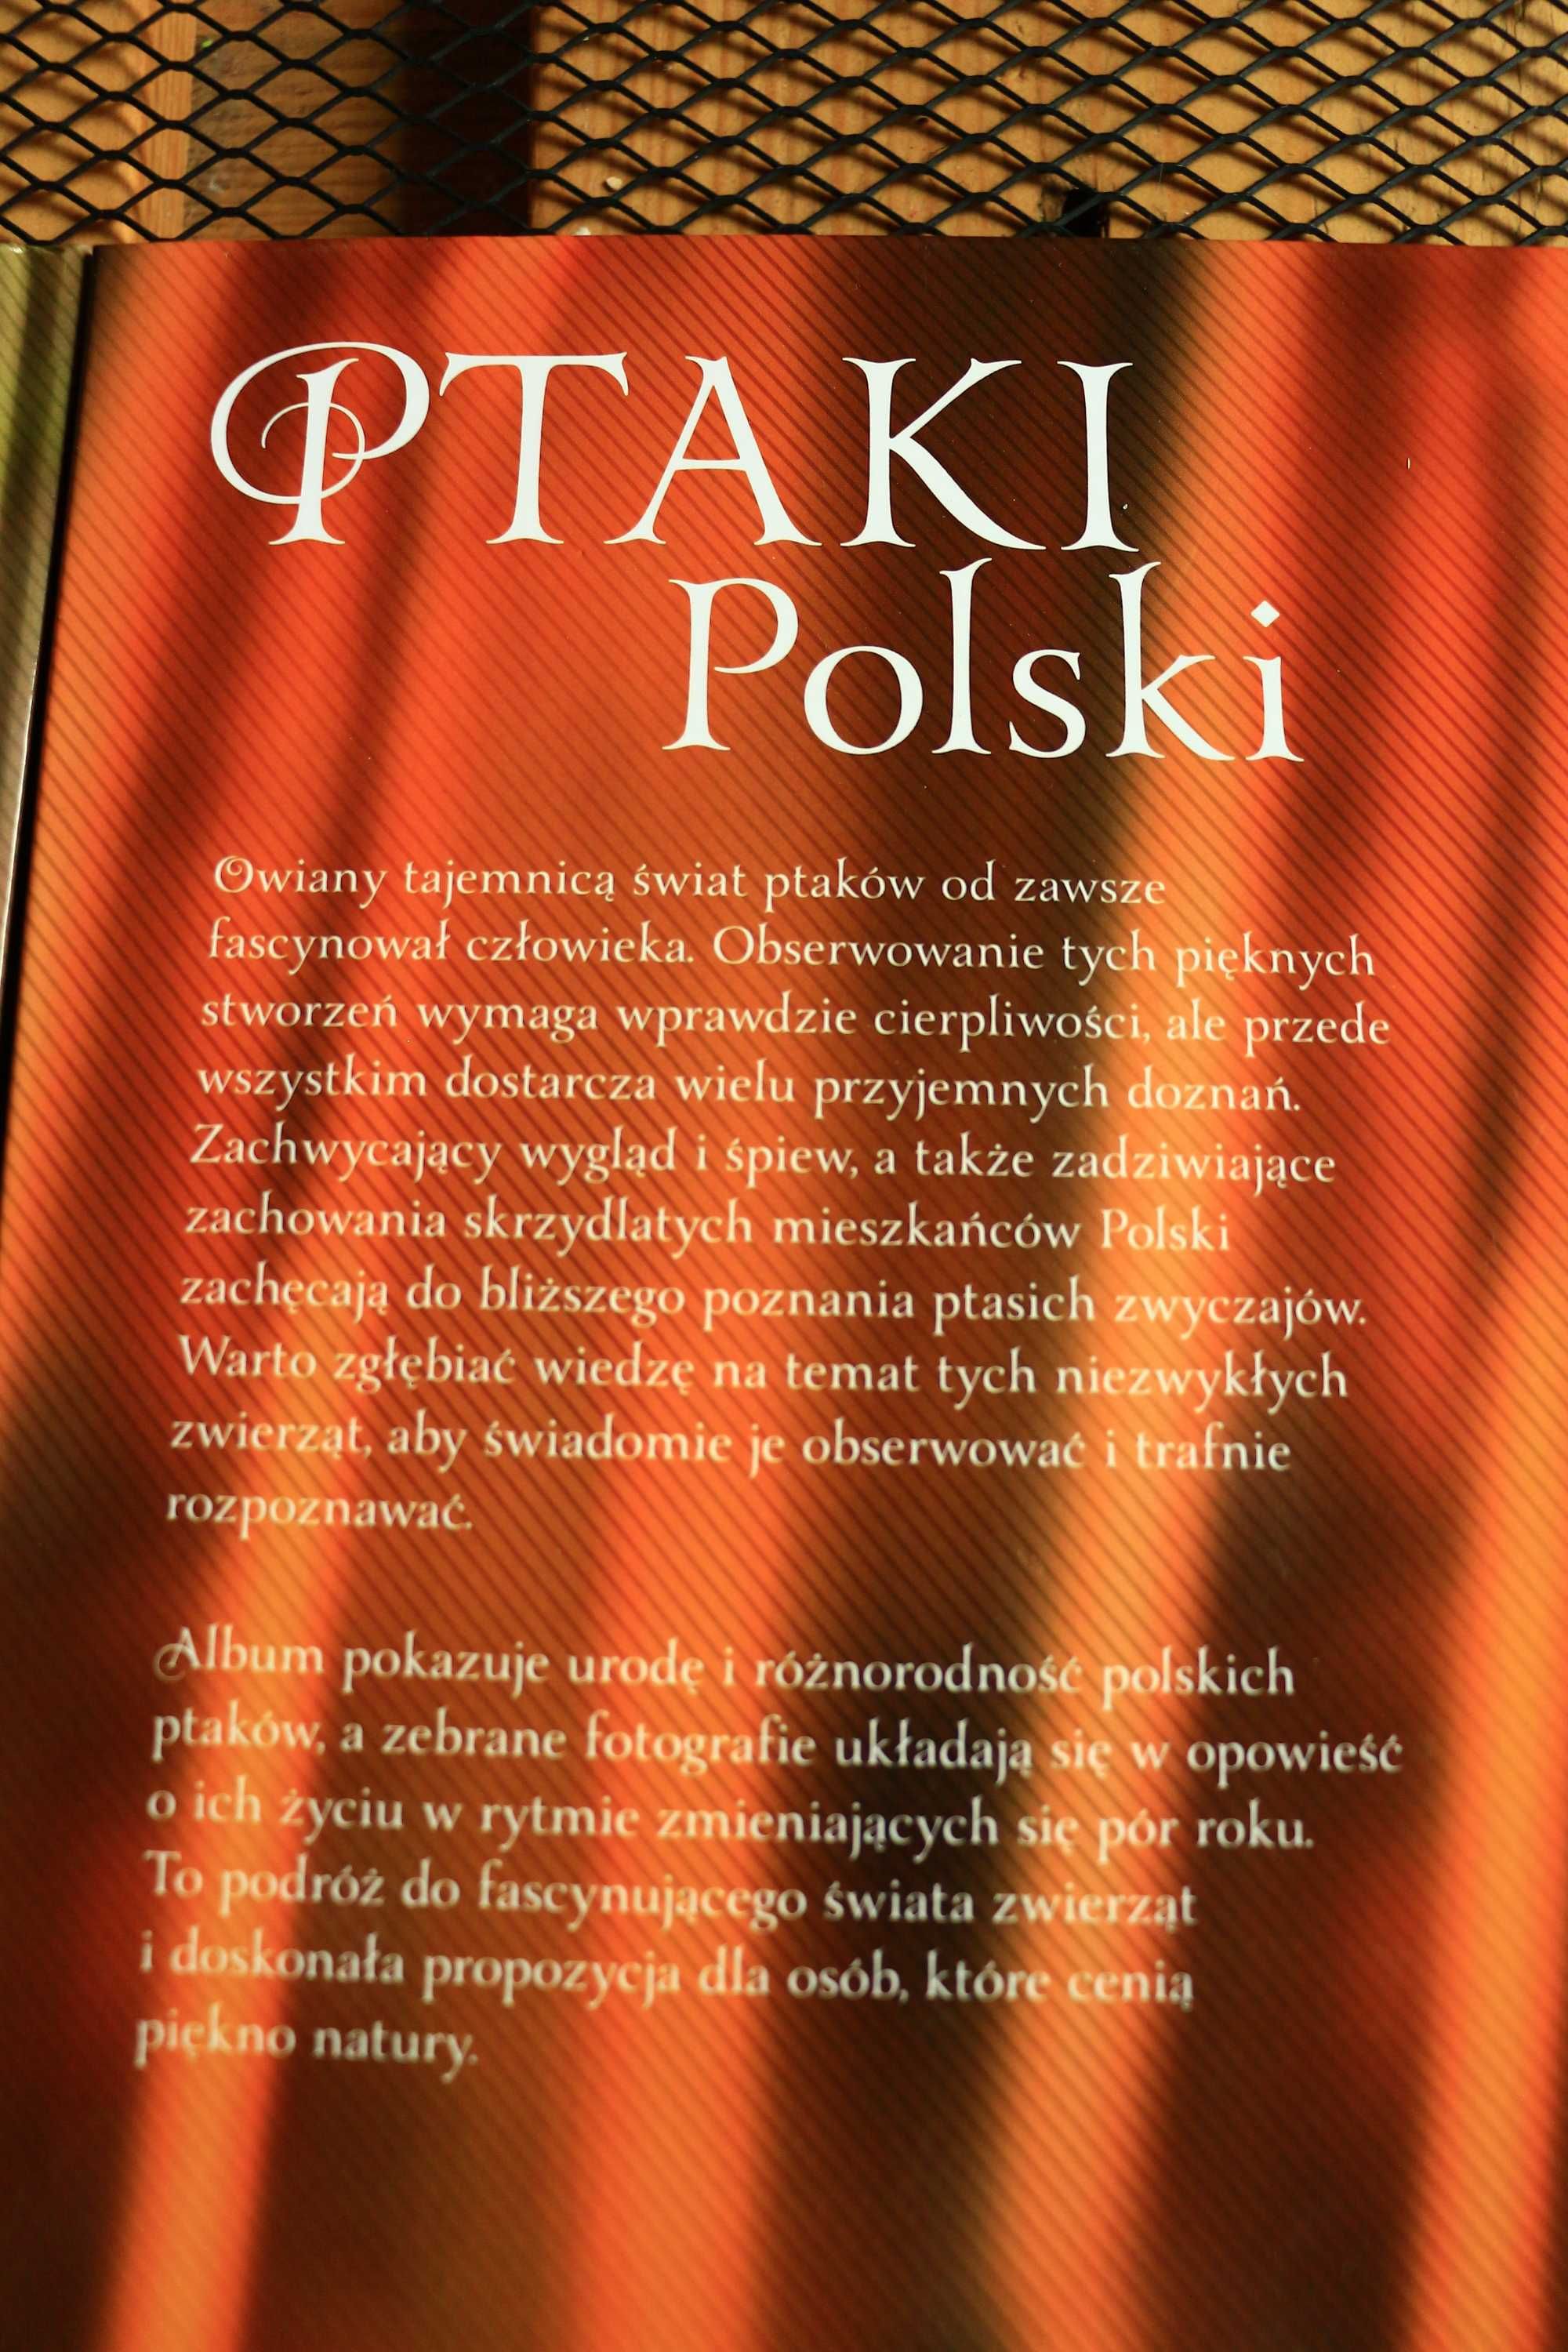 Komplet albumów Ptaki Polski, Psy, Koty piękne zdjęcia wyd.SBM